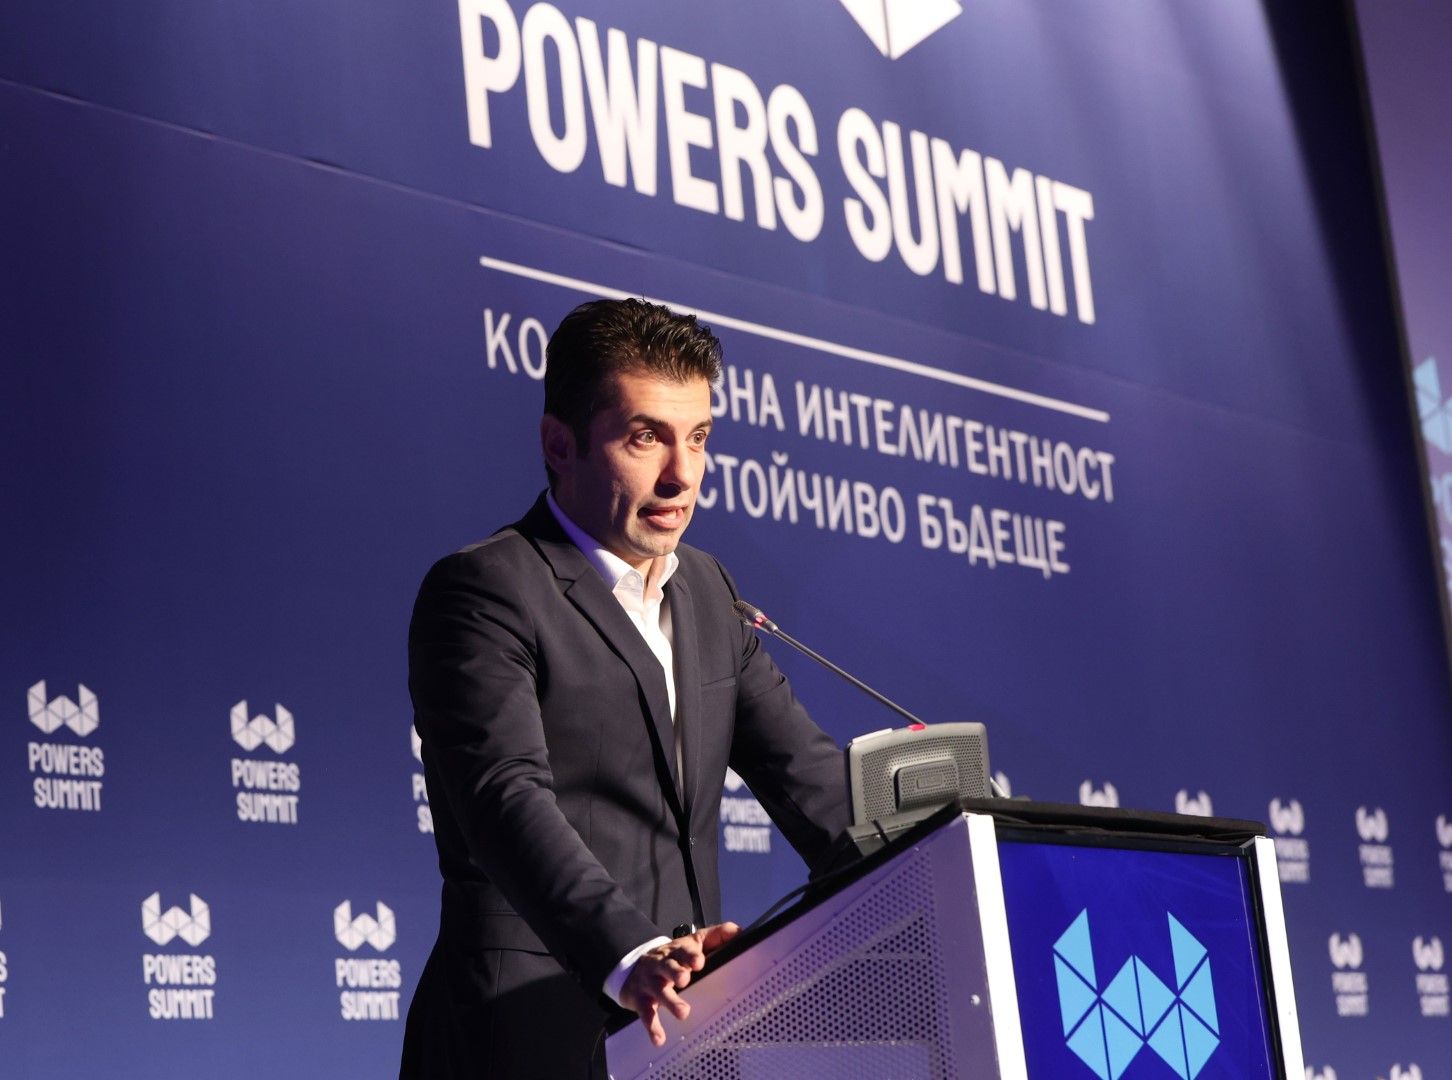 Премиерът Кирил Петков на срещата Българският Давос - Powers Summit - организирана от Фондация Webit и Атлантическия клуб в България